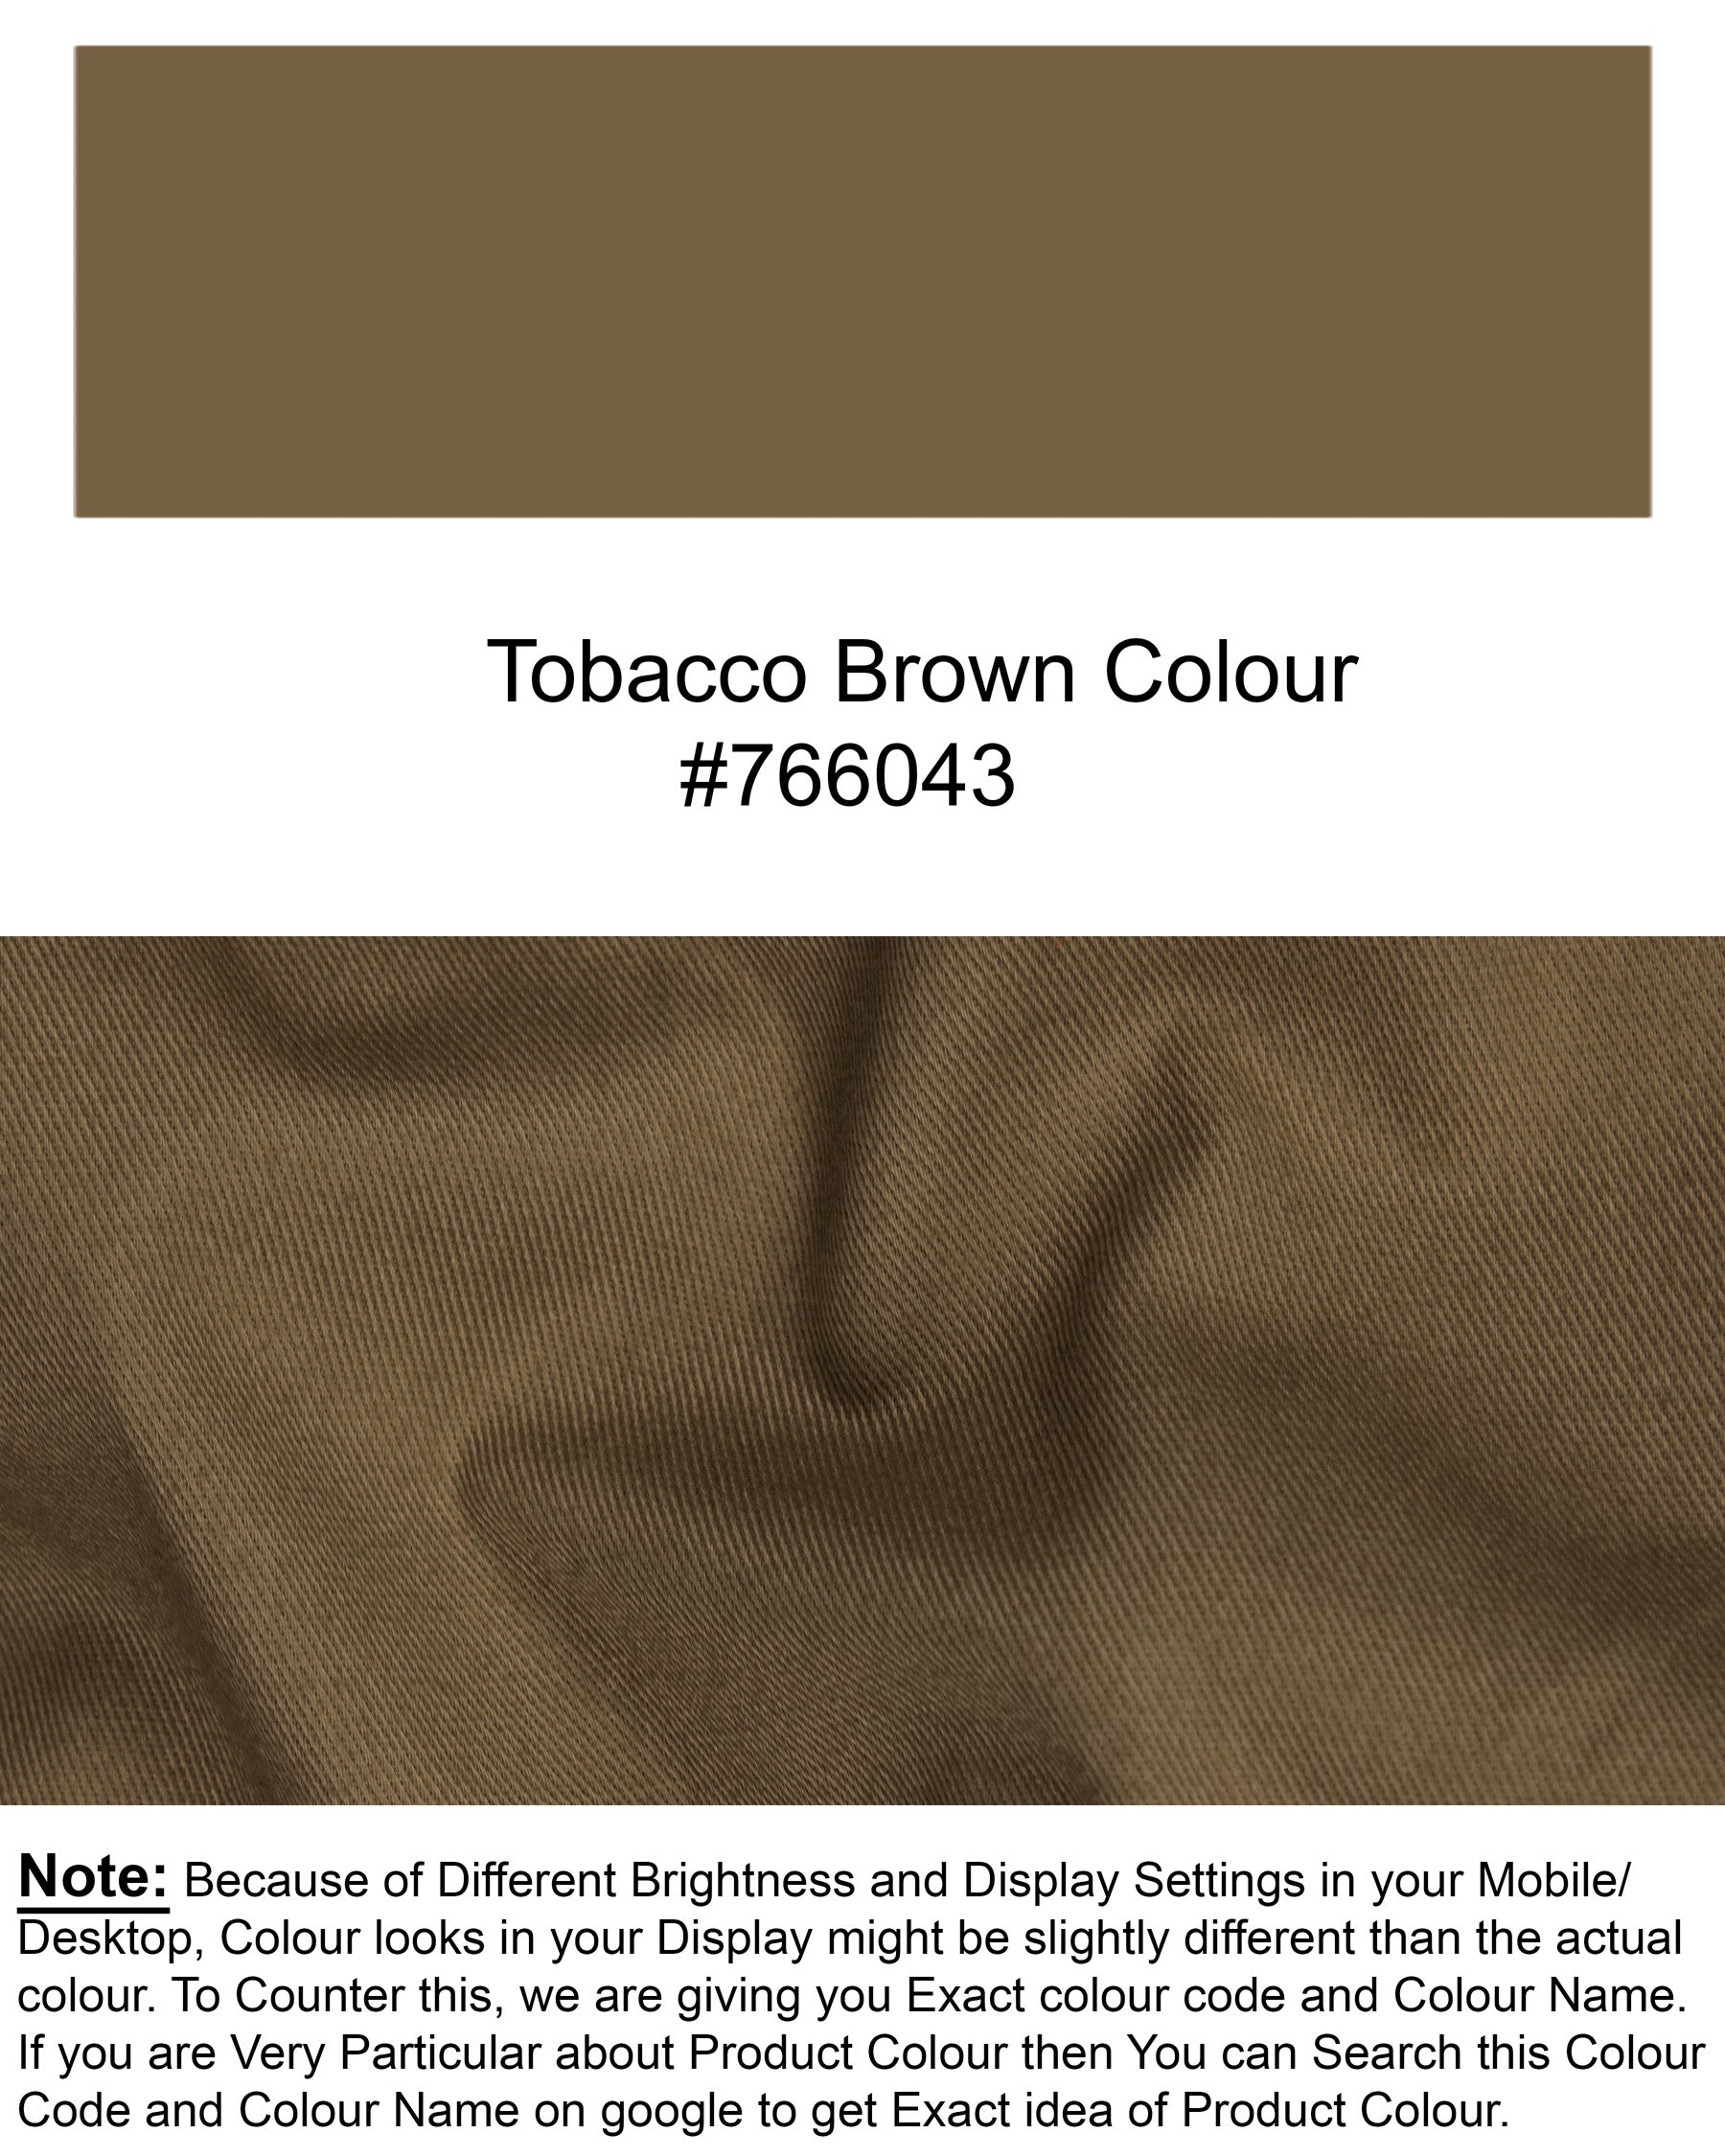 Brown Premium Cotton Suit